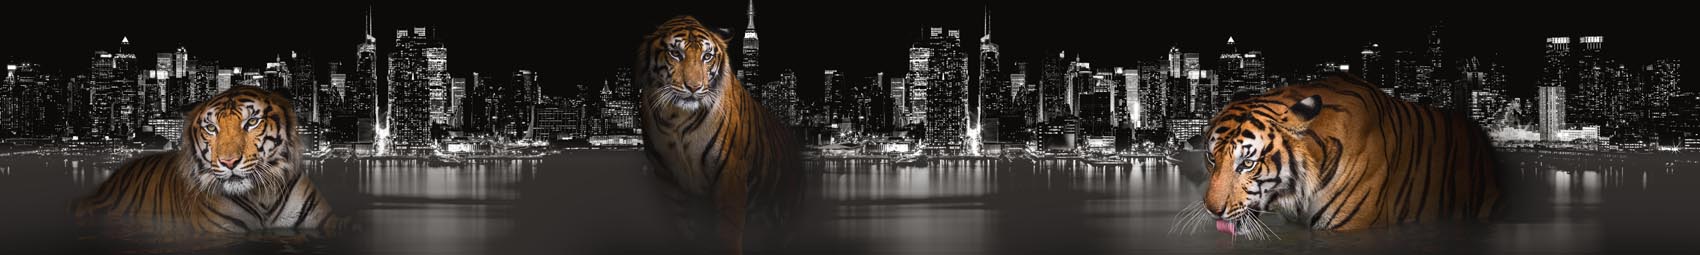 Тигры и ночной город